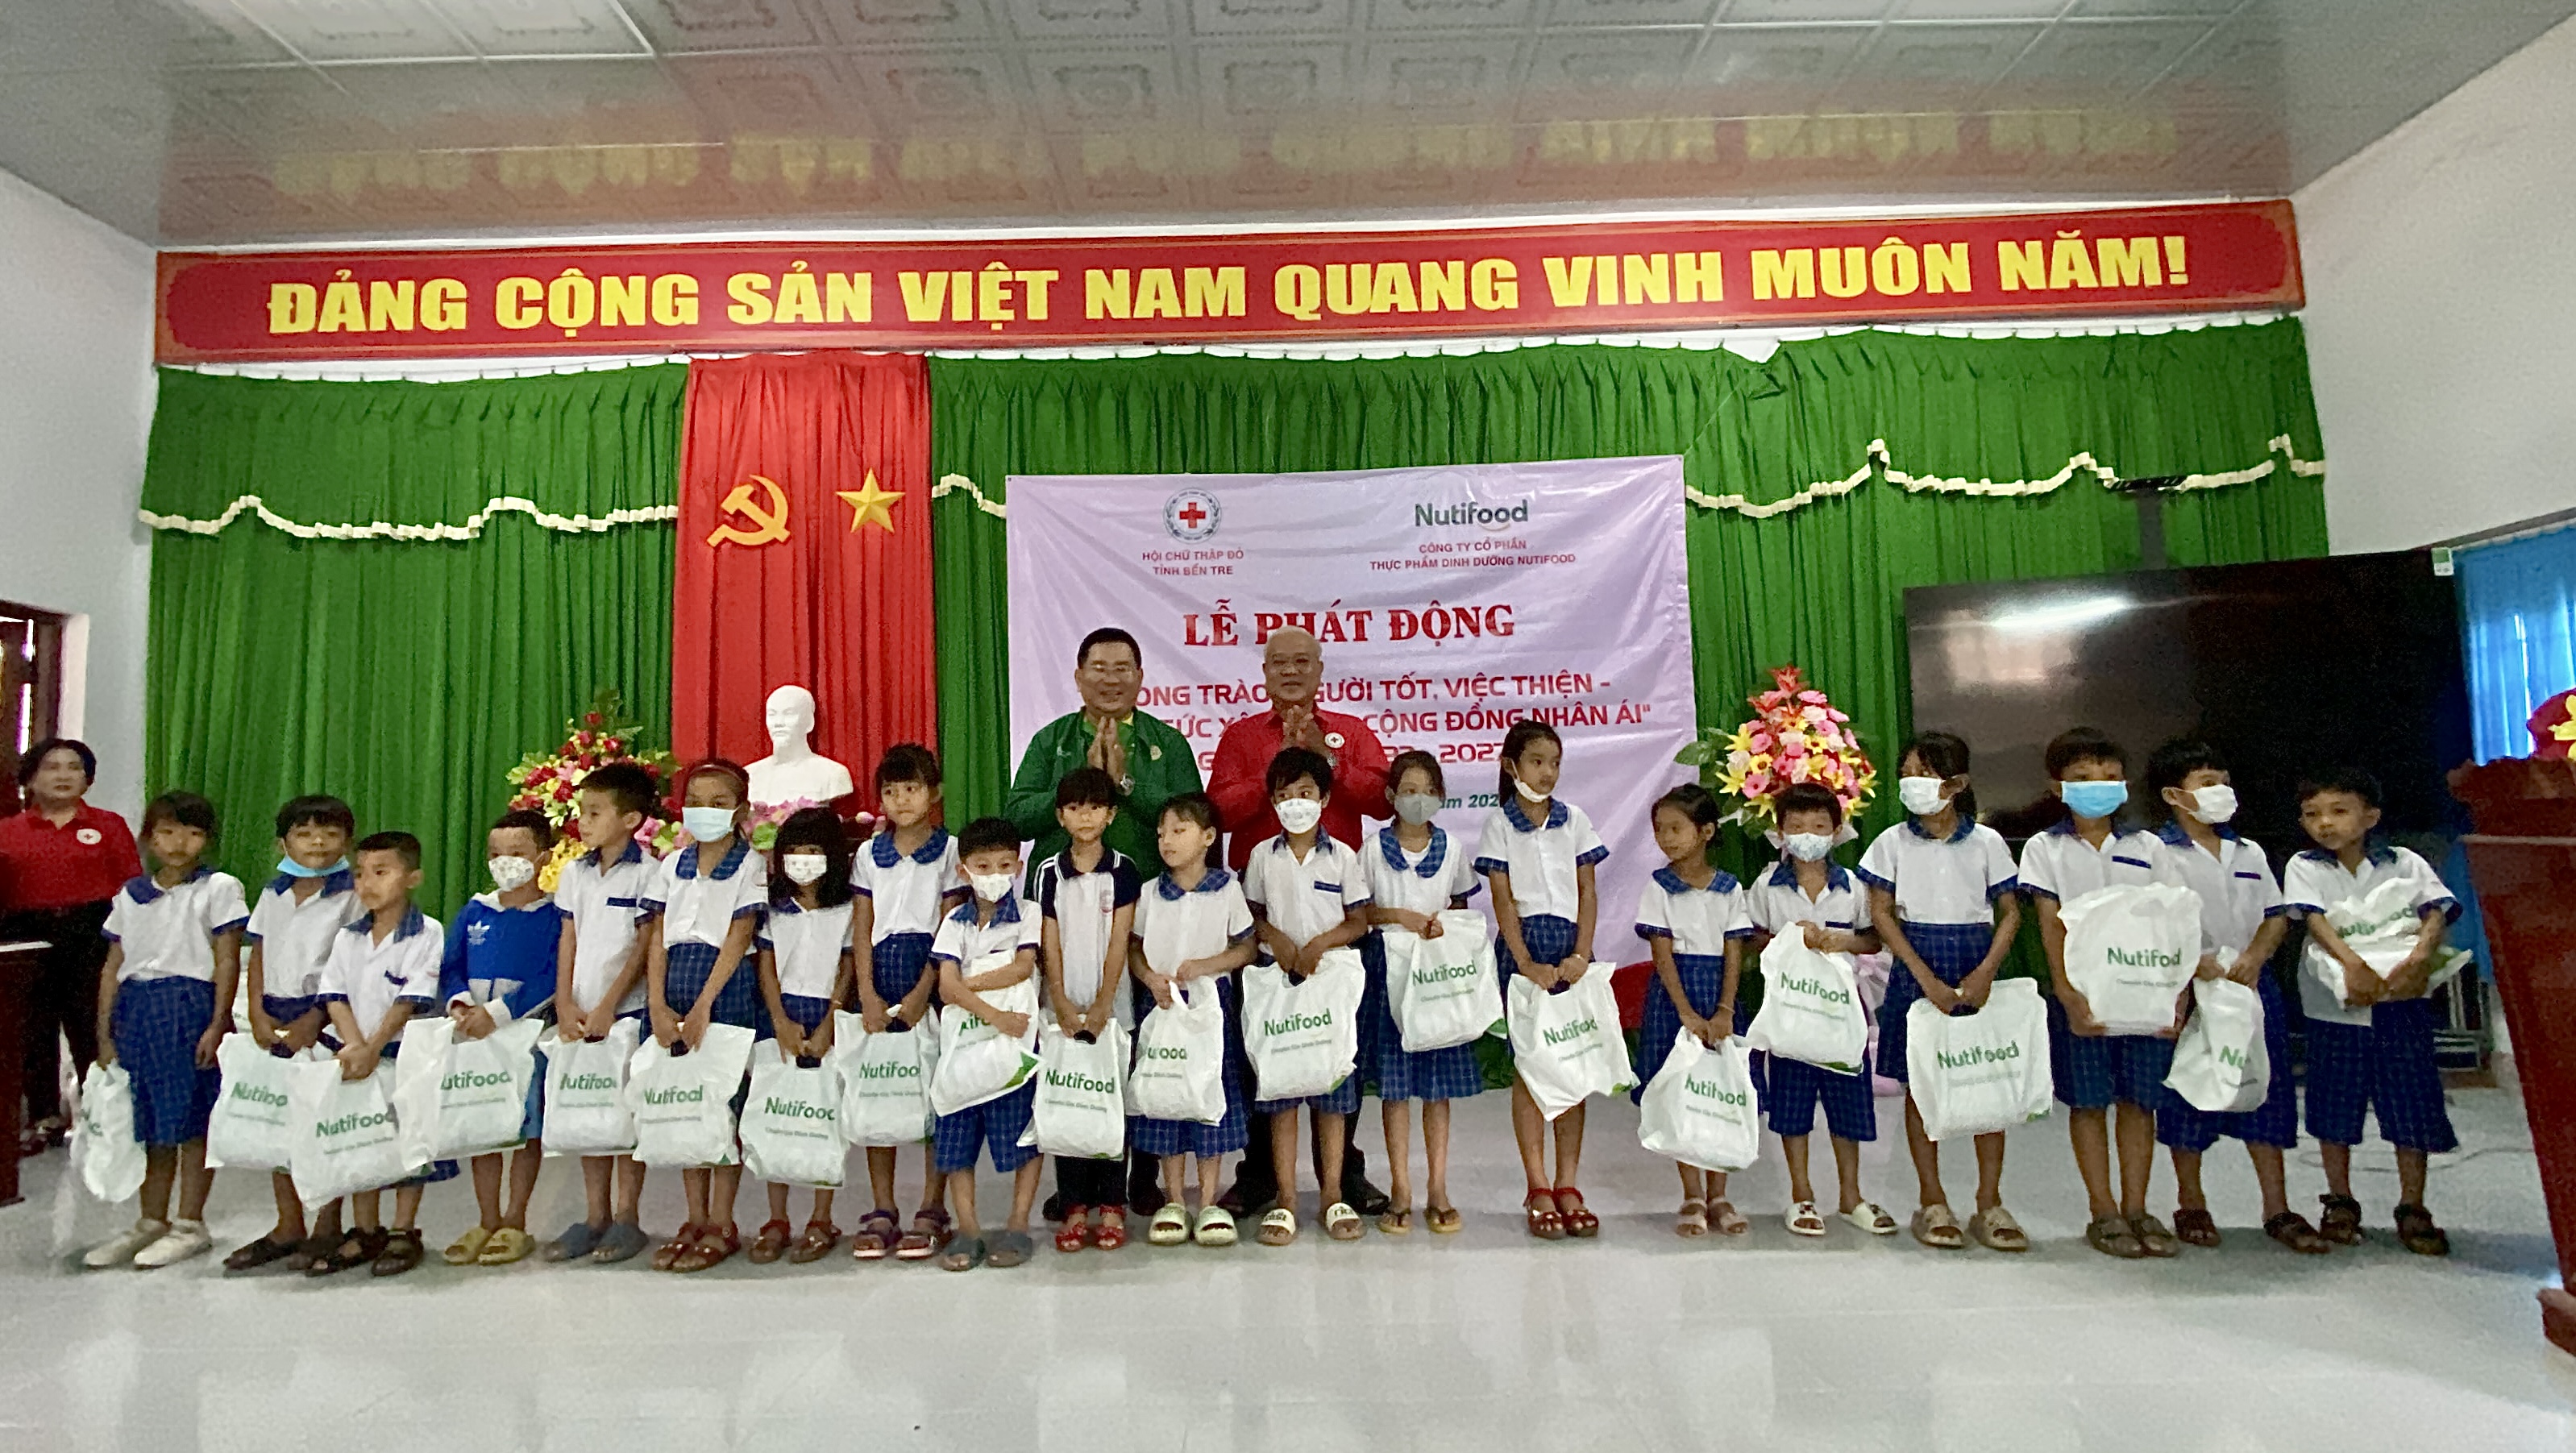 Nutifood trao sữa cho các học sinh tại trường Tiểu học Nguyễn Thị Lang, huyện Bình Đại, tỉnh Bến Tre ngày 26/5